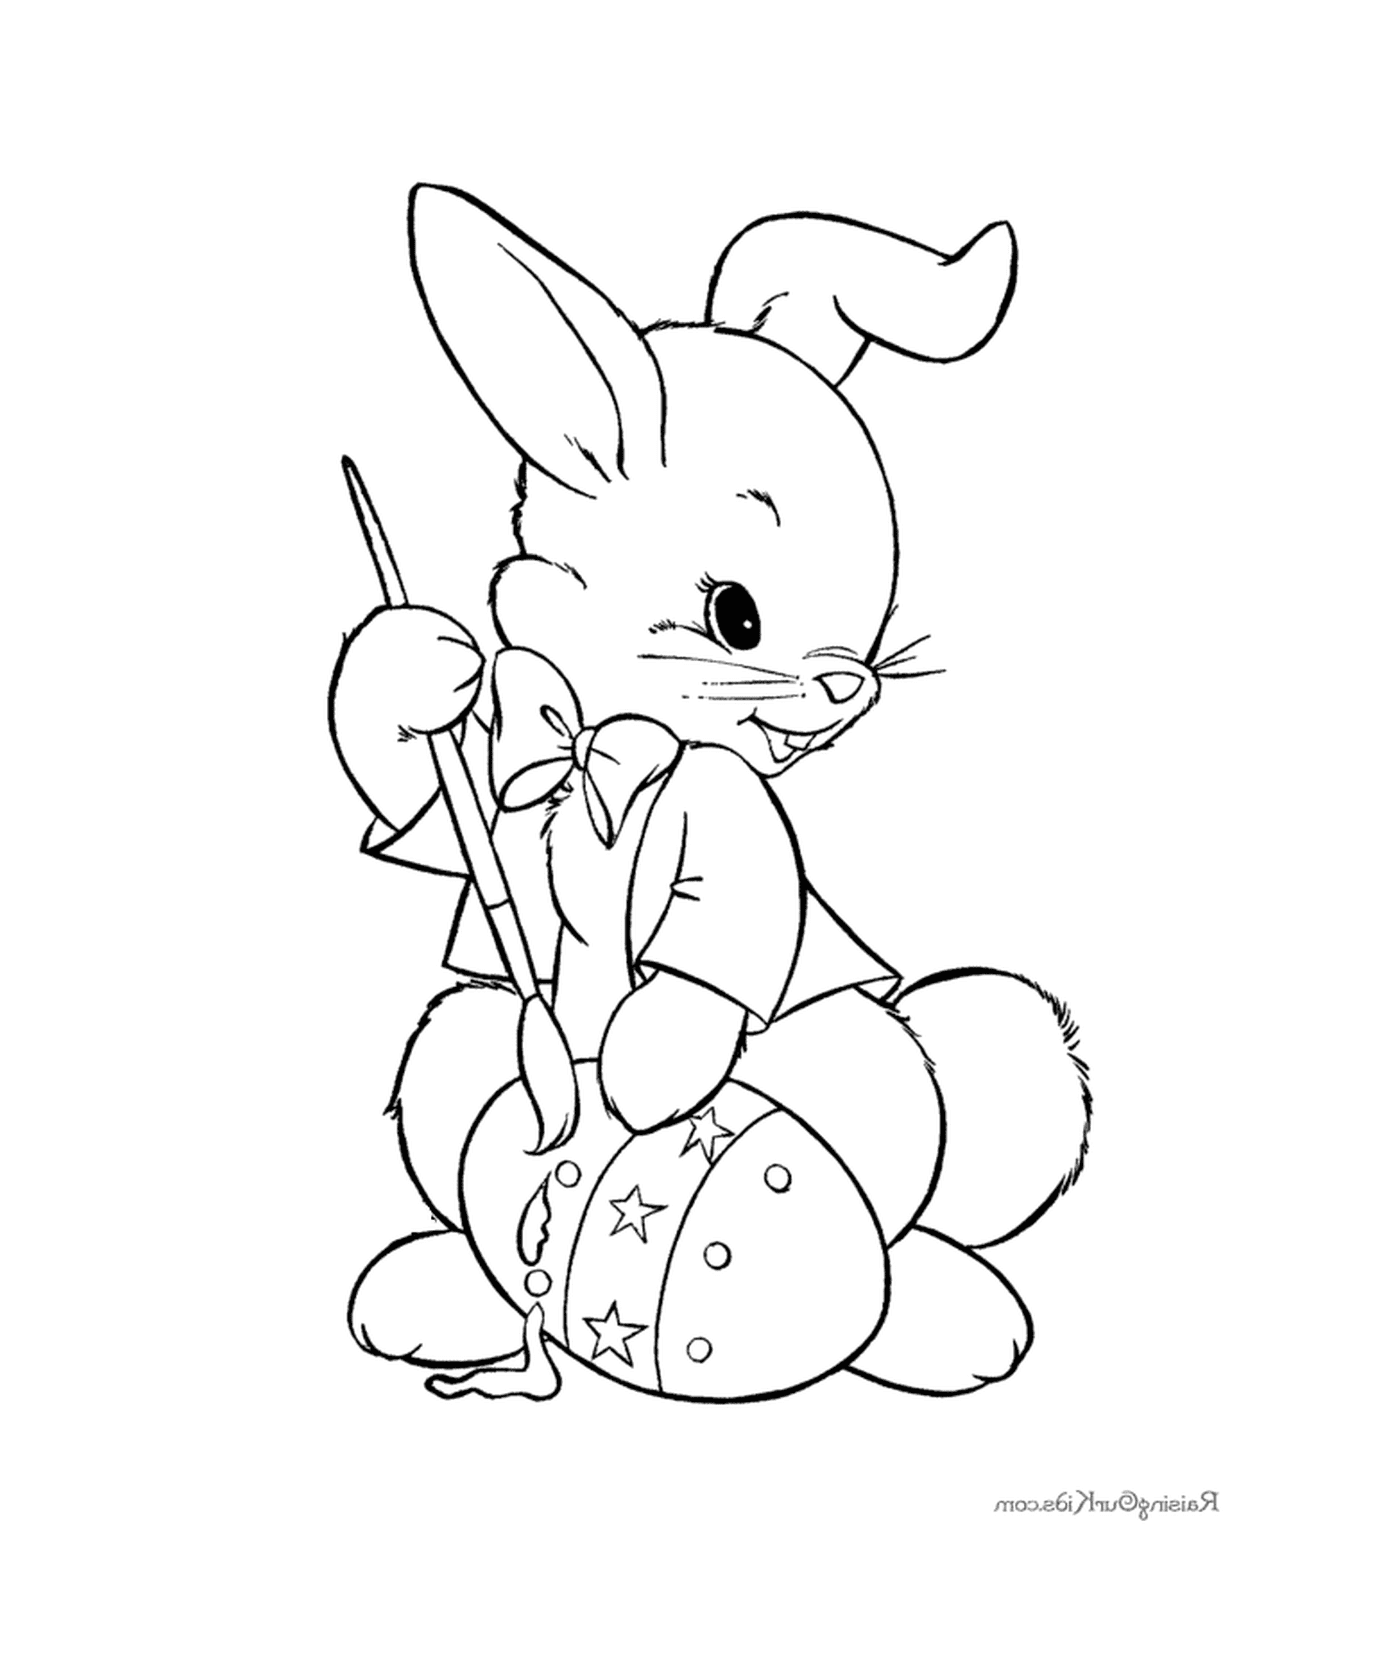  अंडे के साथ एक ईस्टर खरगोश 